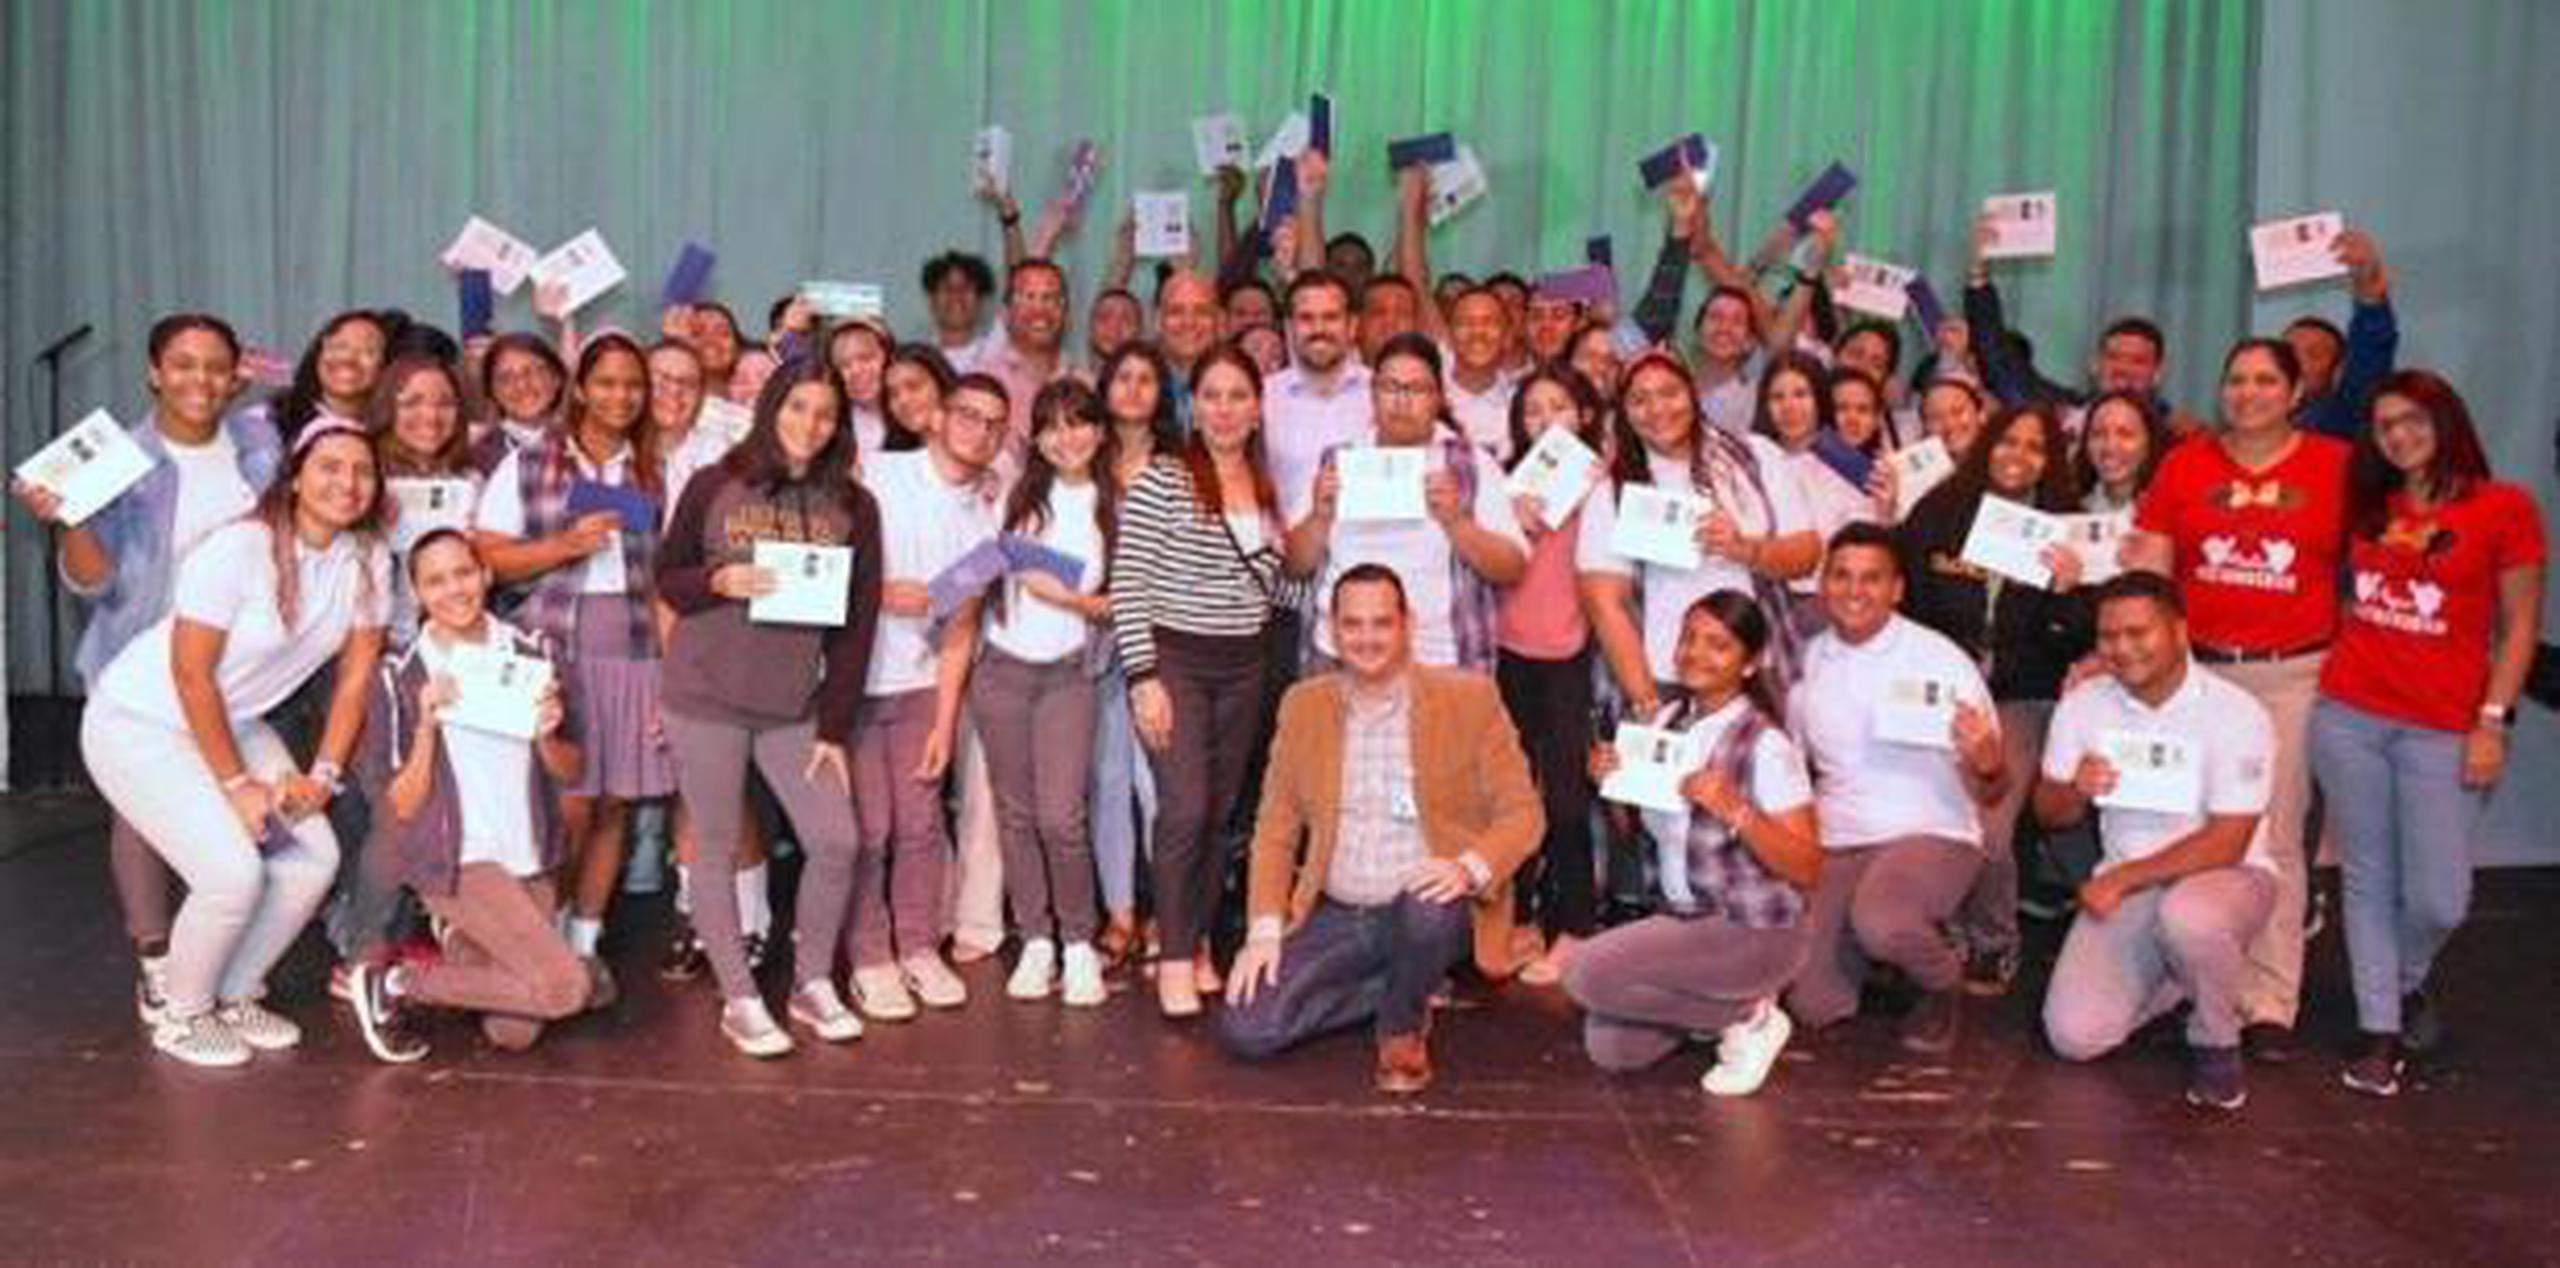 El gobernador Ricardo Rosselló junto a los estudiantes que recibieron boletos para asistir a la presentación de Bad Bunny. (Suministrada)